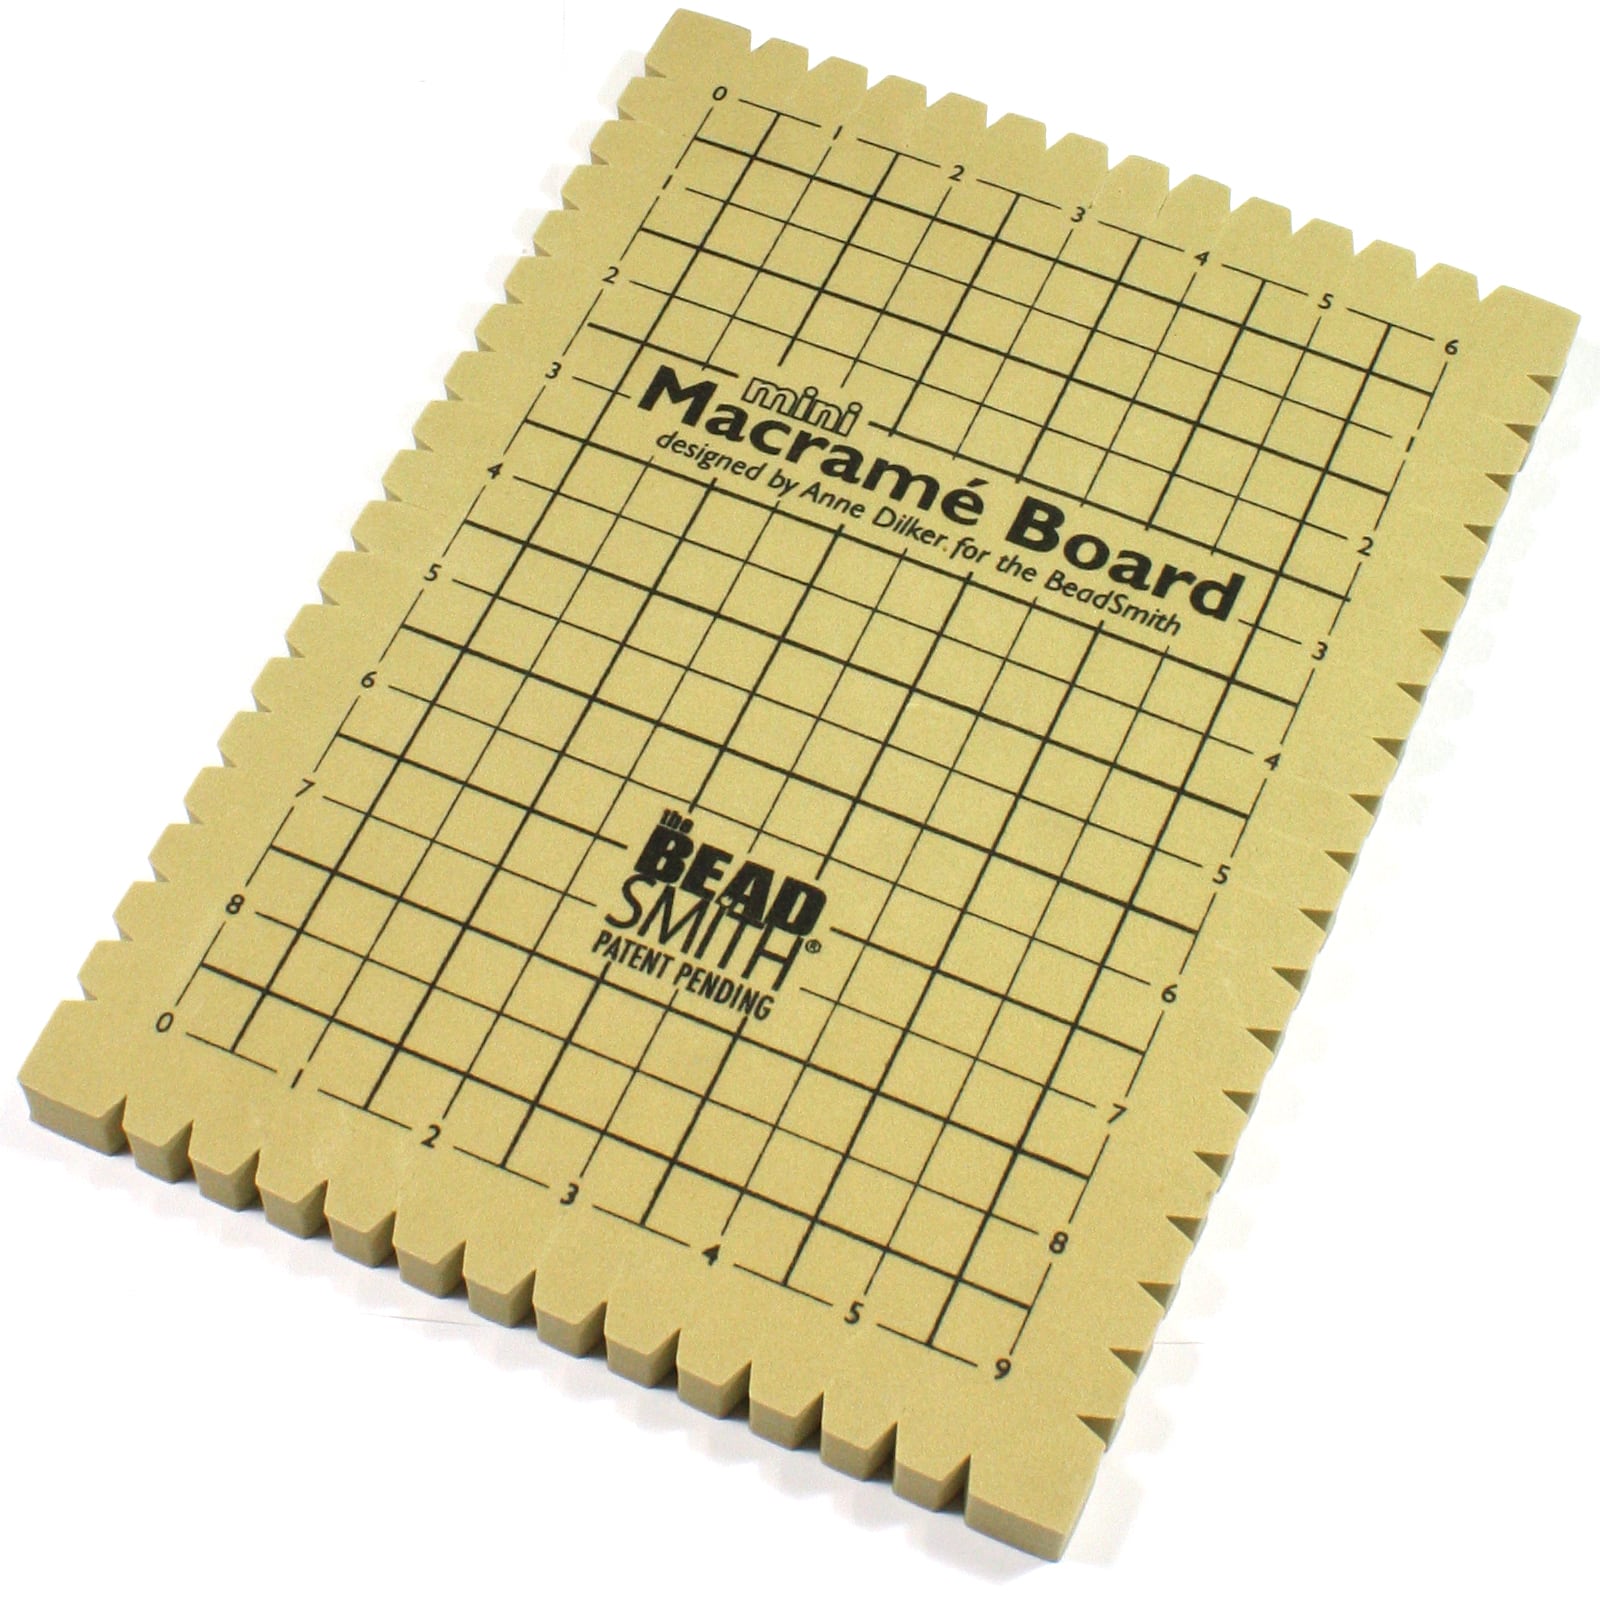 Beadsmith Macrame Board, Mini - 7.5” x 10.5”